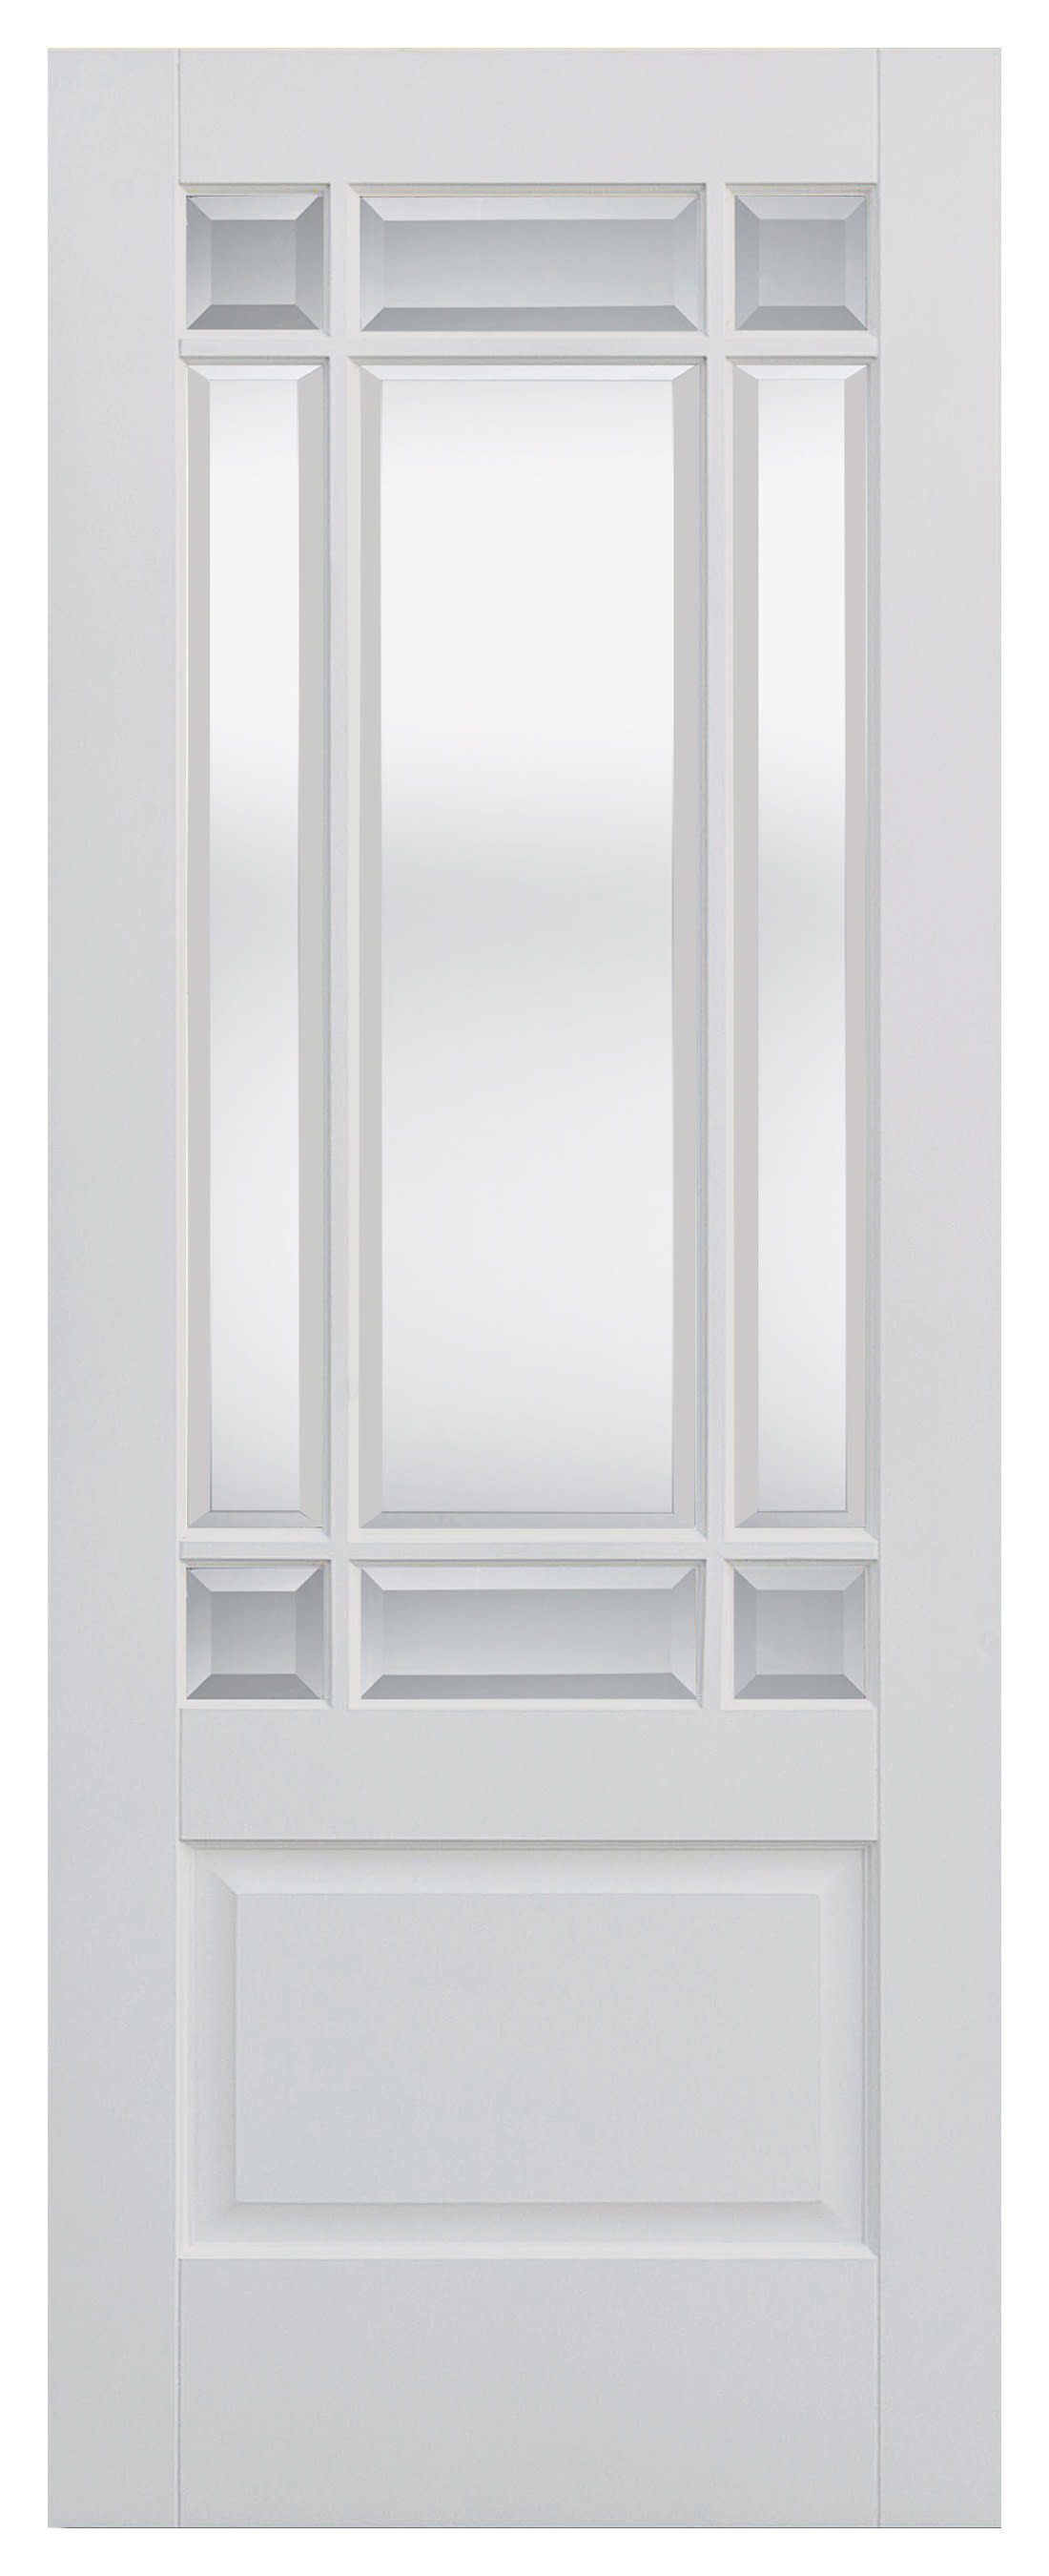 LPD Internal Downham Clear Glazed Primed White Door